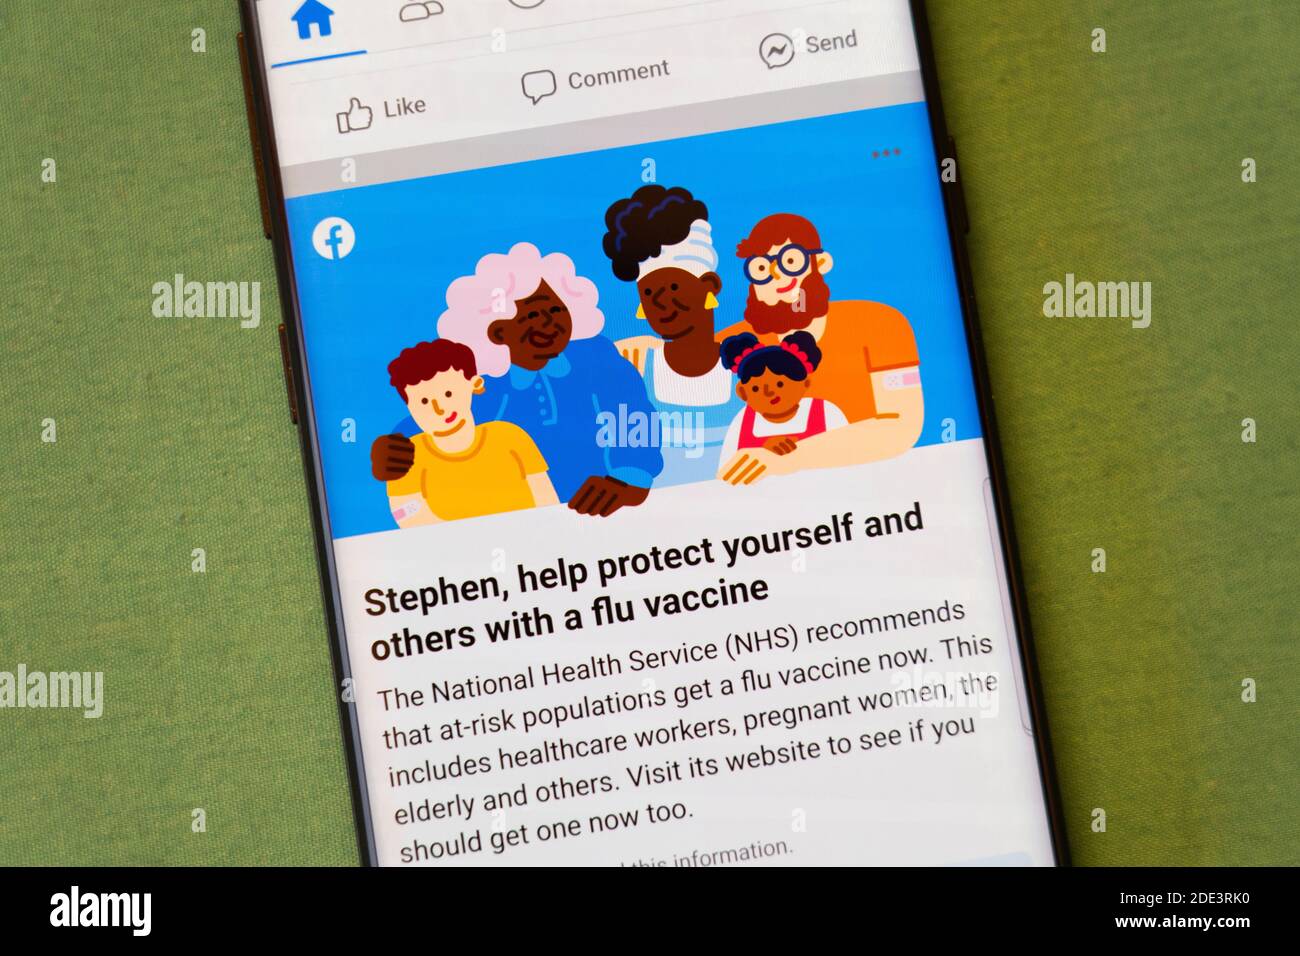 Une publicité NHS (National Health Service) sur Facebook pour que les gens prennent le vaccin contre la grippe sur un écran de smartphone, Royaume-Uni Banque D'Images